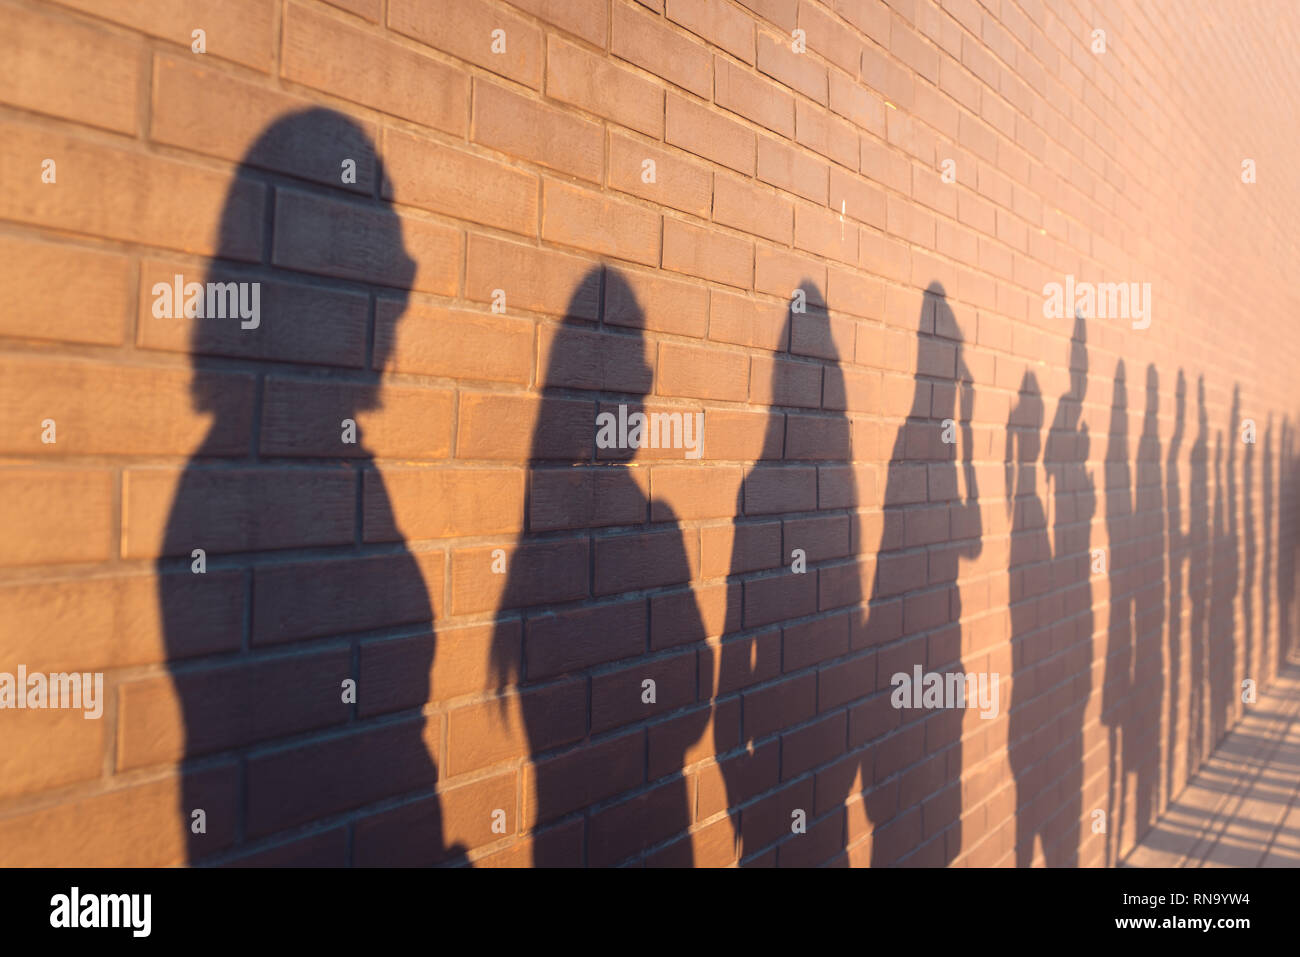 Eine Linie der Schatten von Menschen säumten gegen ein Red brick wall. In einer Warteschlange, um die Änderungen zu stehen Stockfoto